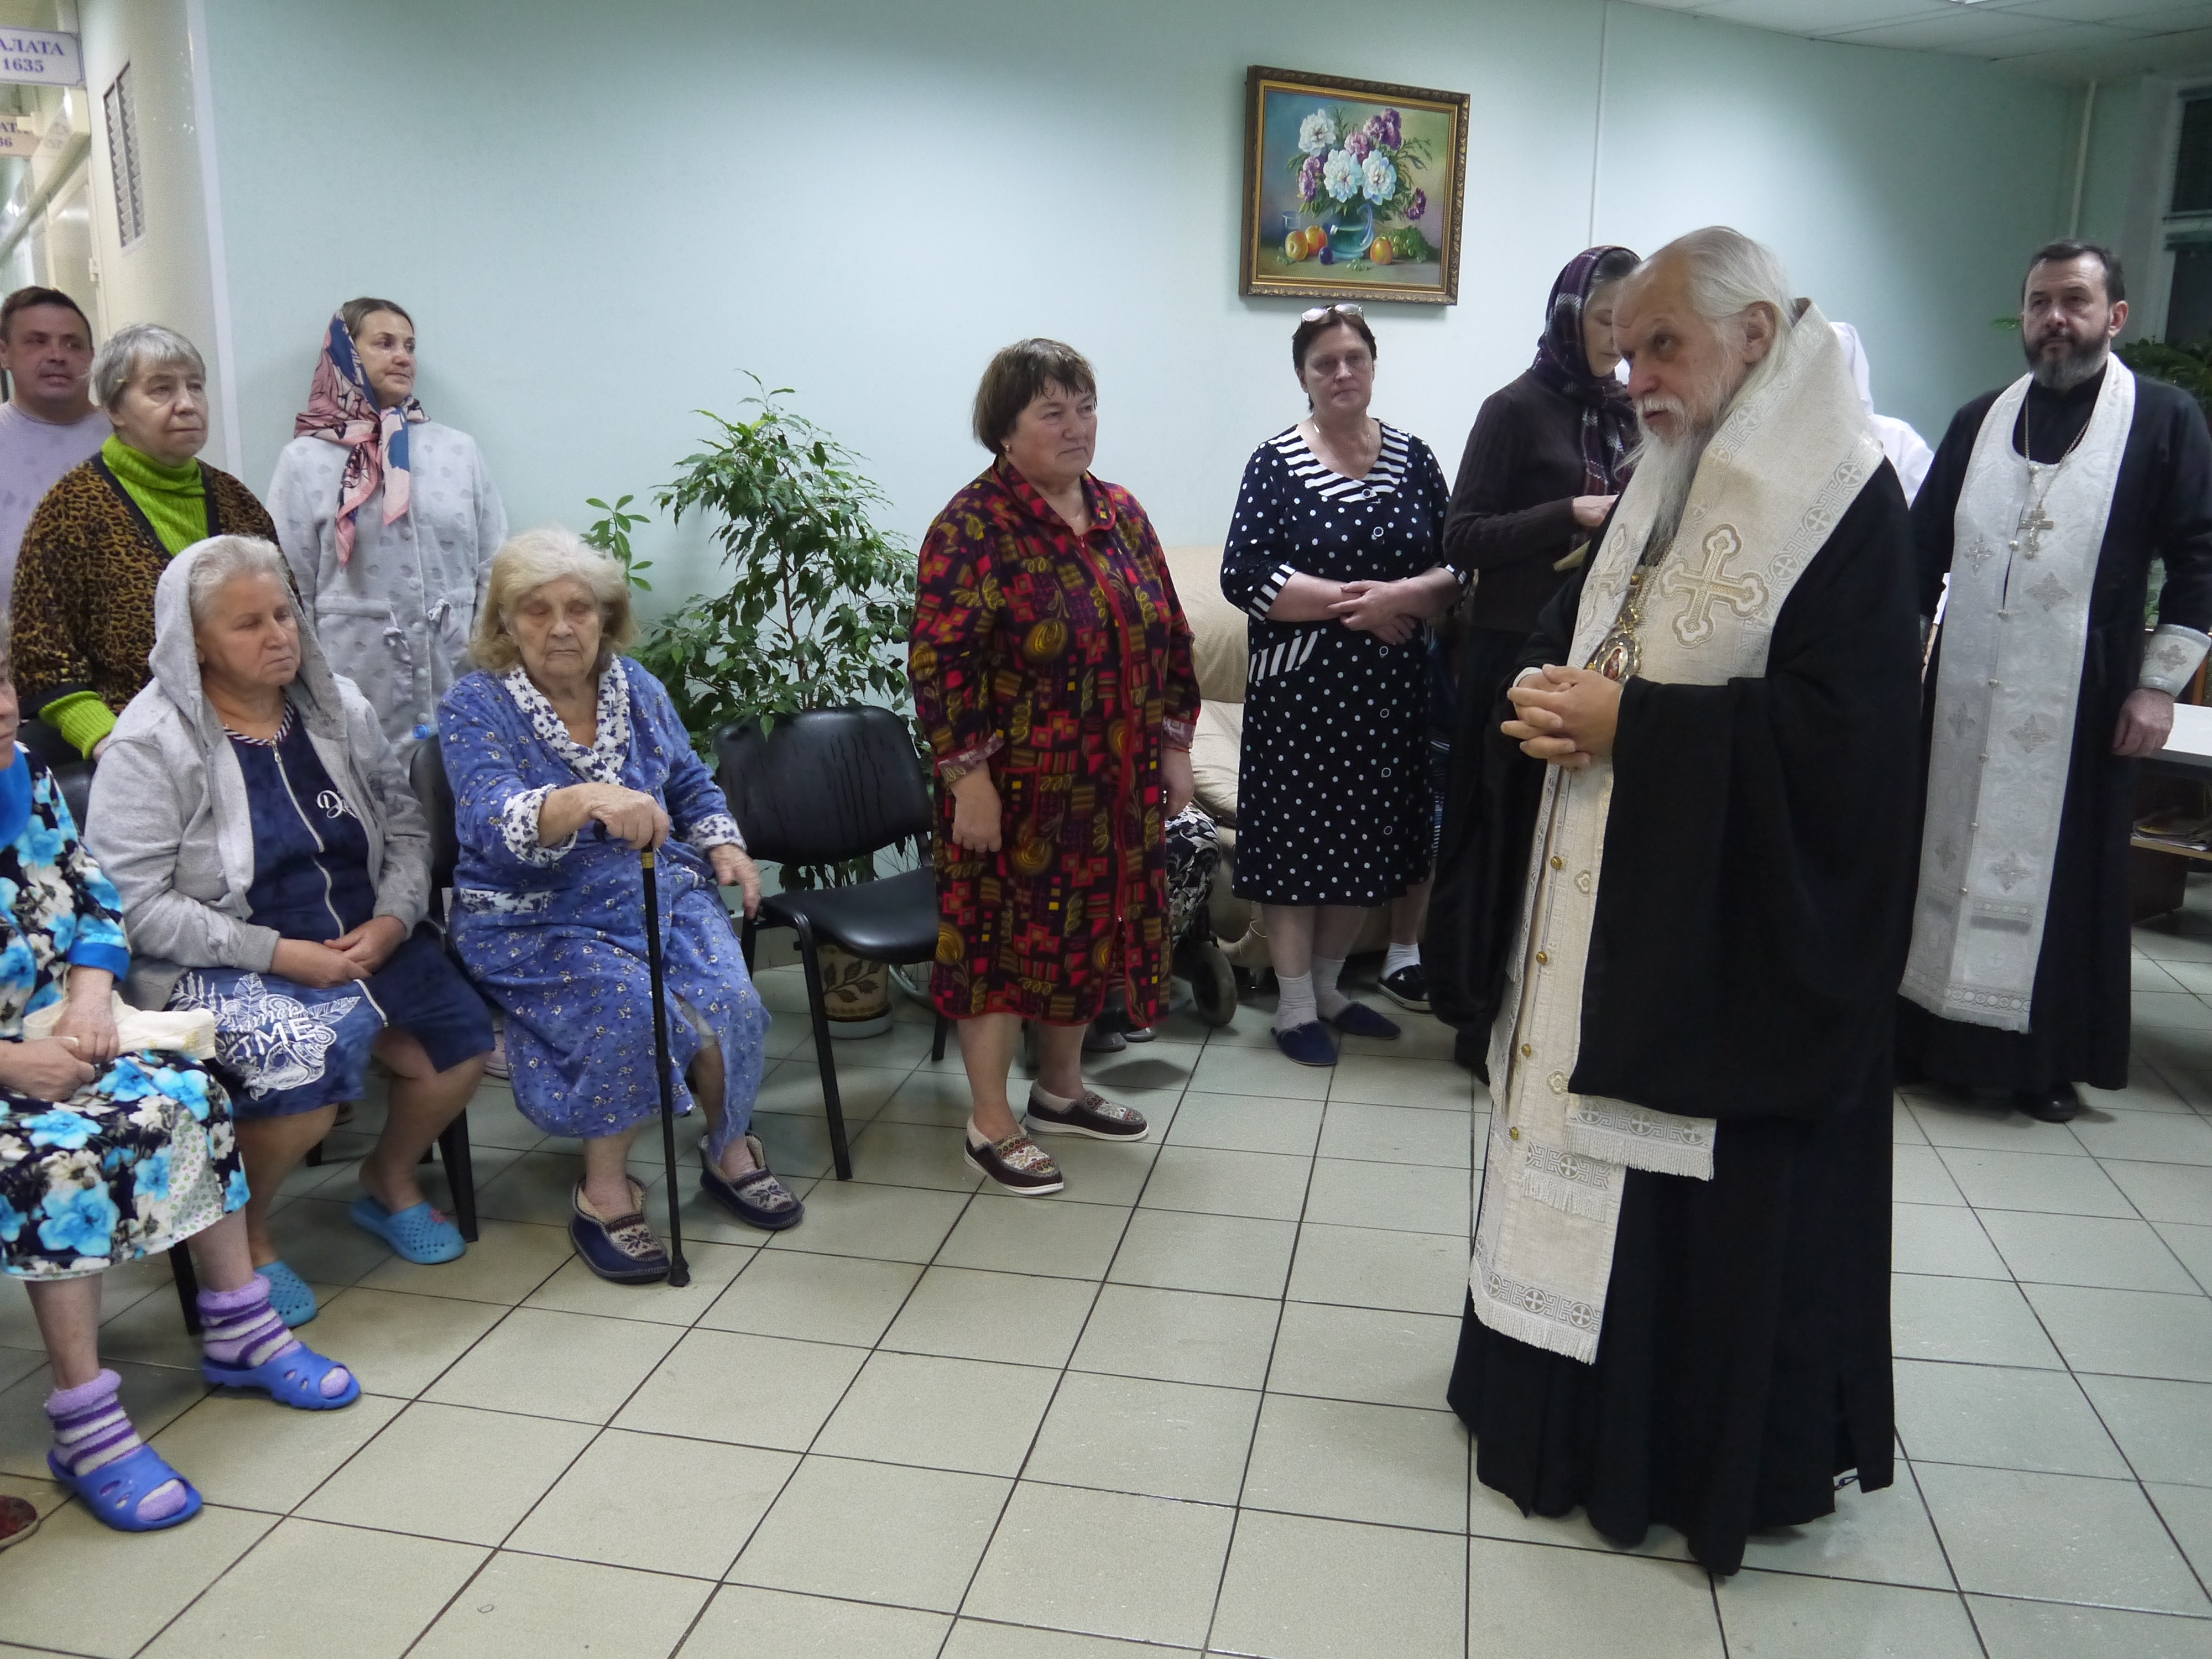 Епископ Орехово-Зуевский Пантелеимон произнес краткую проповедь перед началом молебна